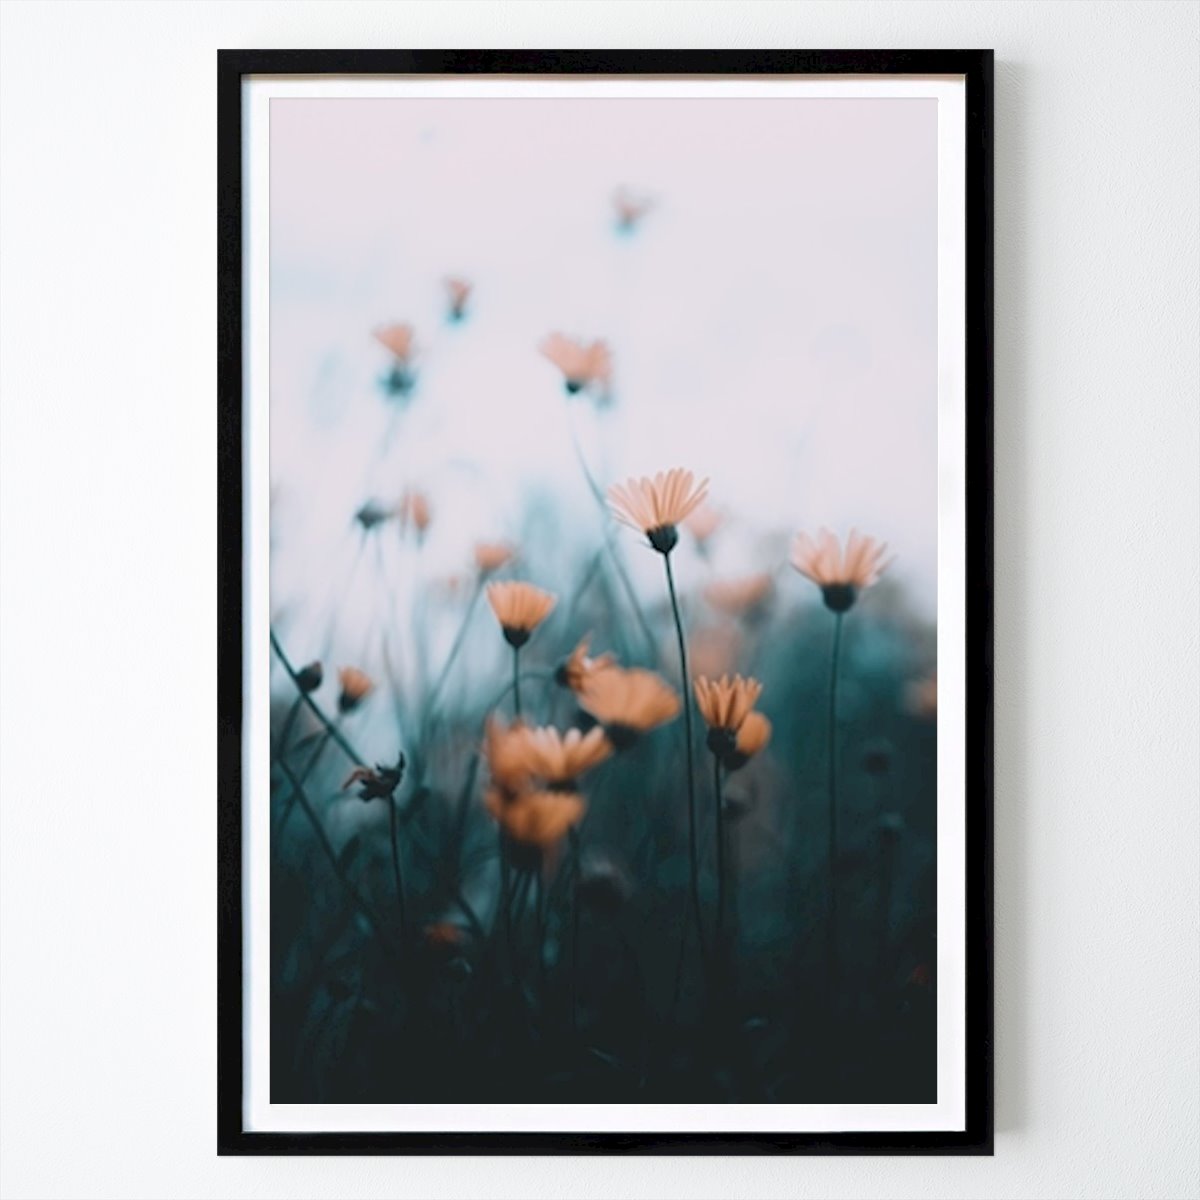 Poster: Blumen in Schärfe & Unschärfe von Thomas Gunillasson von Printler